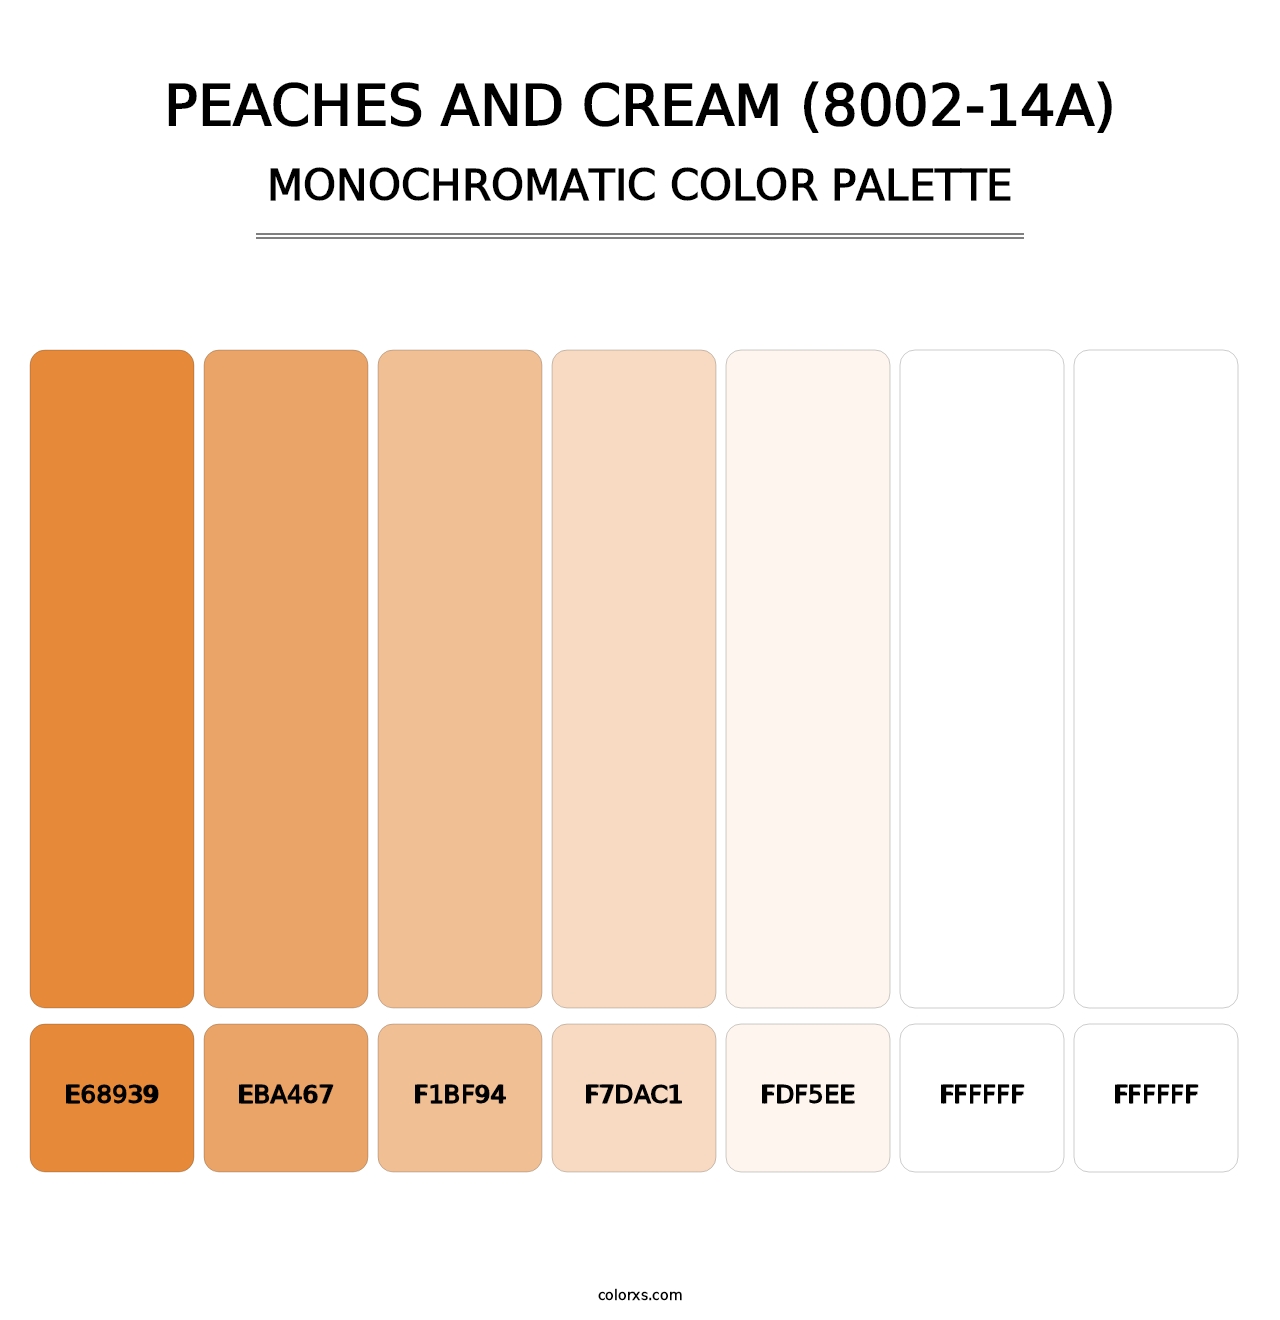 Peaches and Cream (8002-14A) - Monochromatic Color Palette